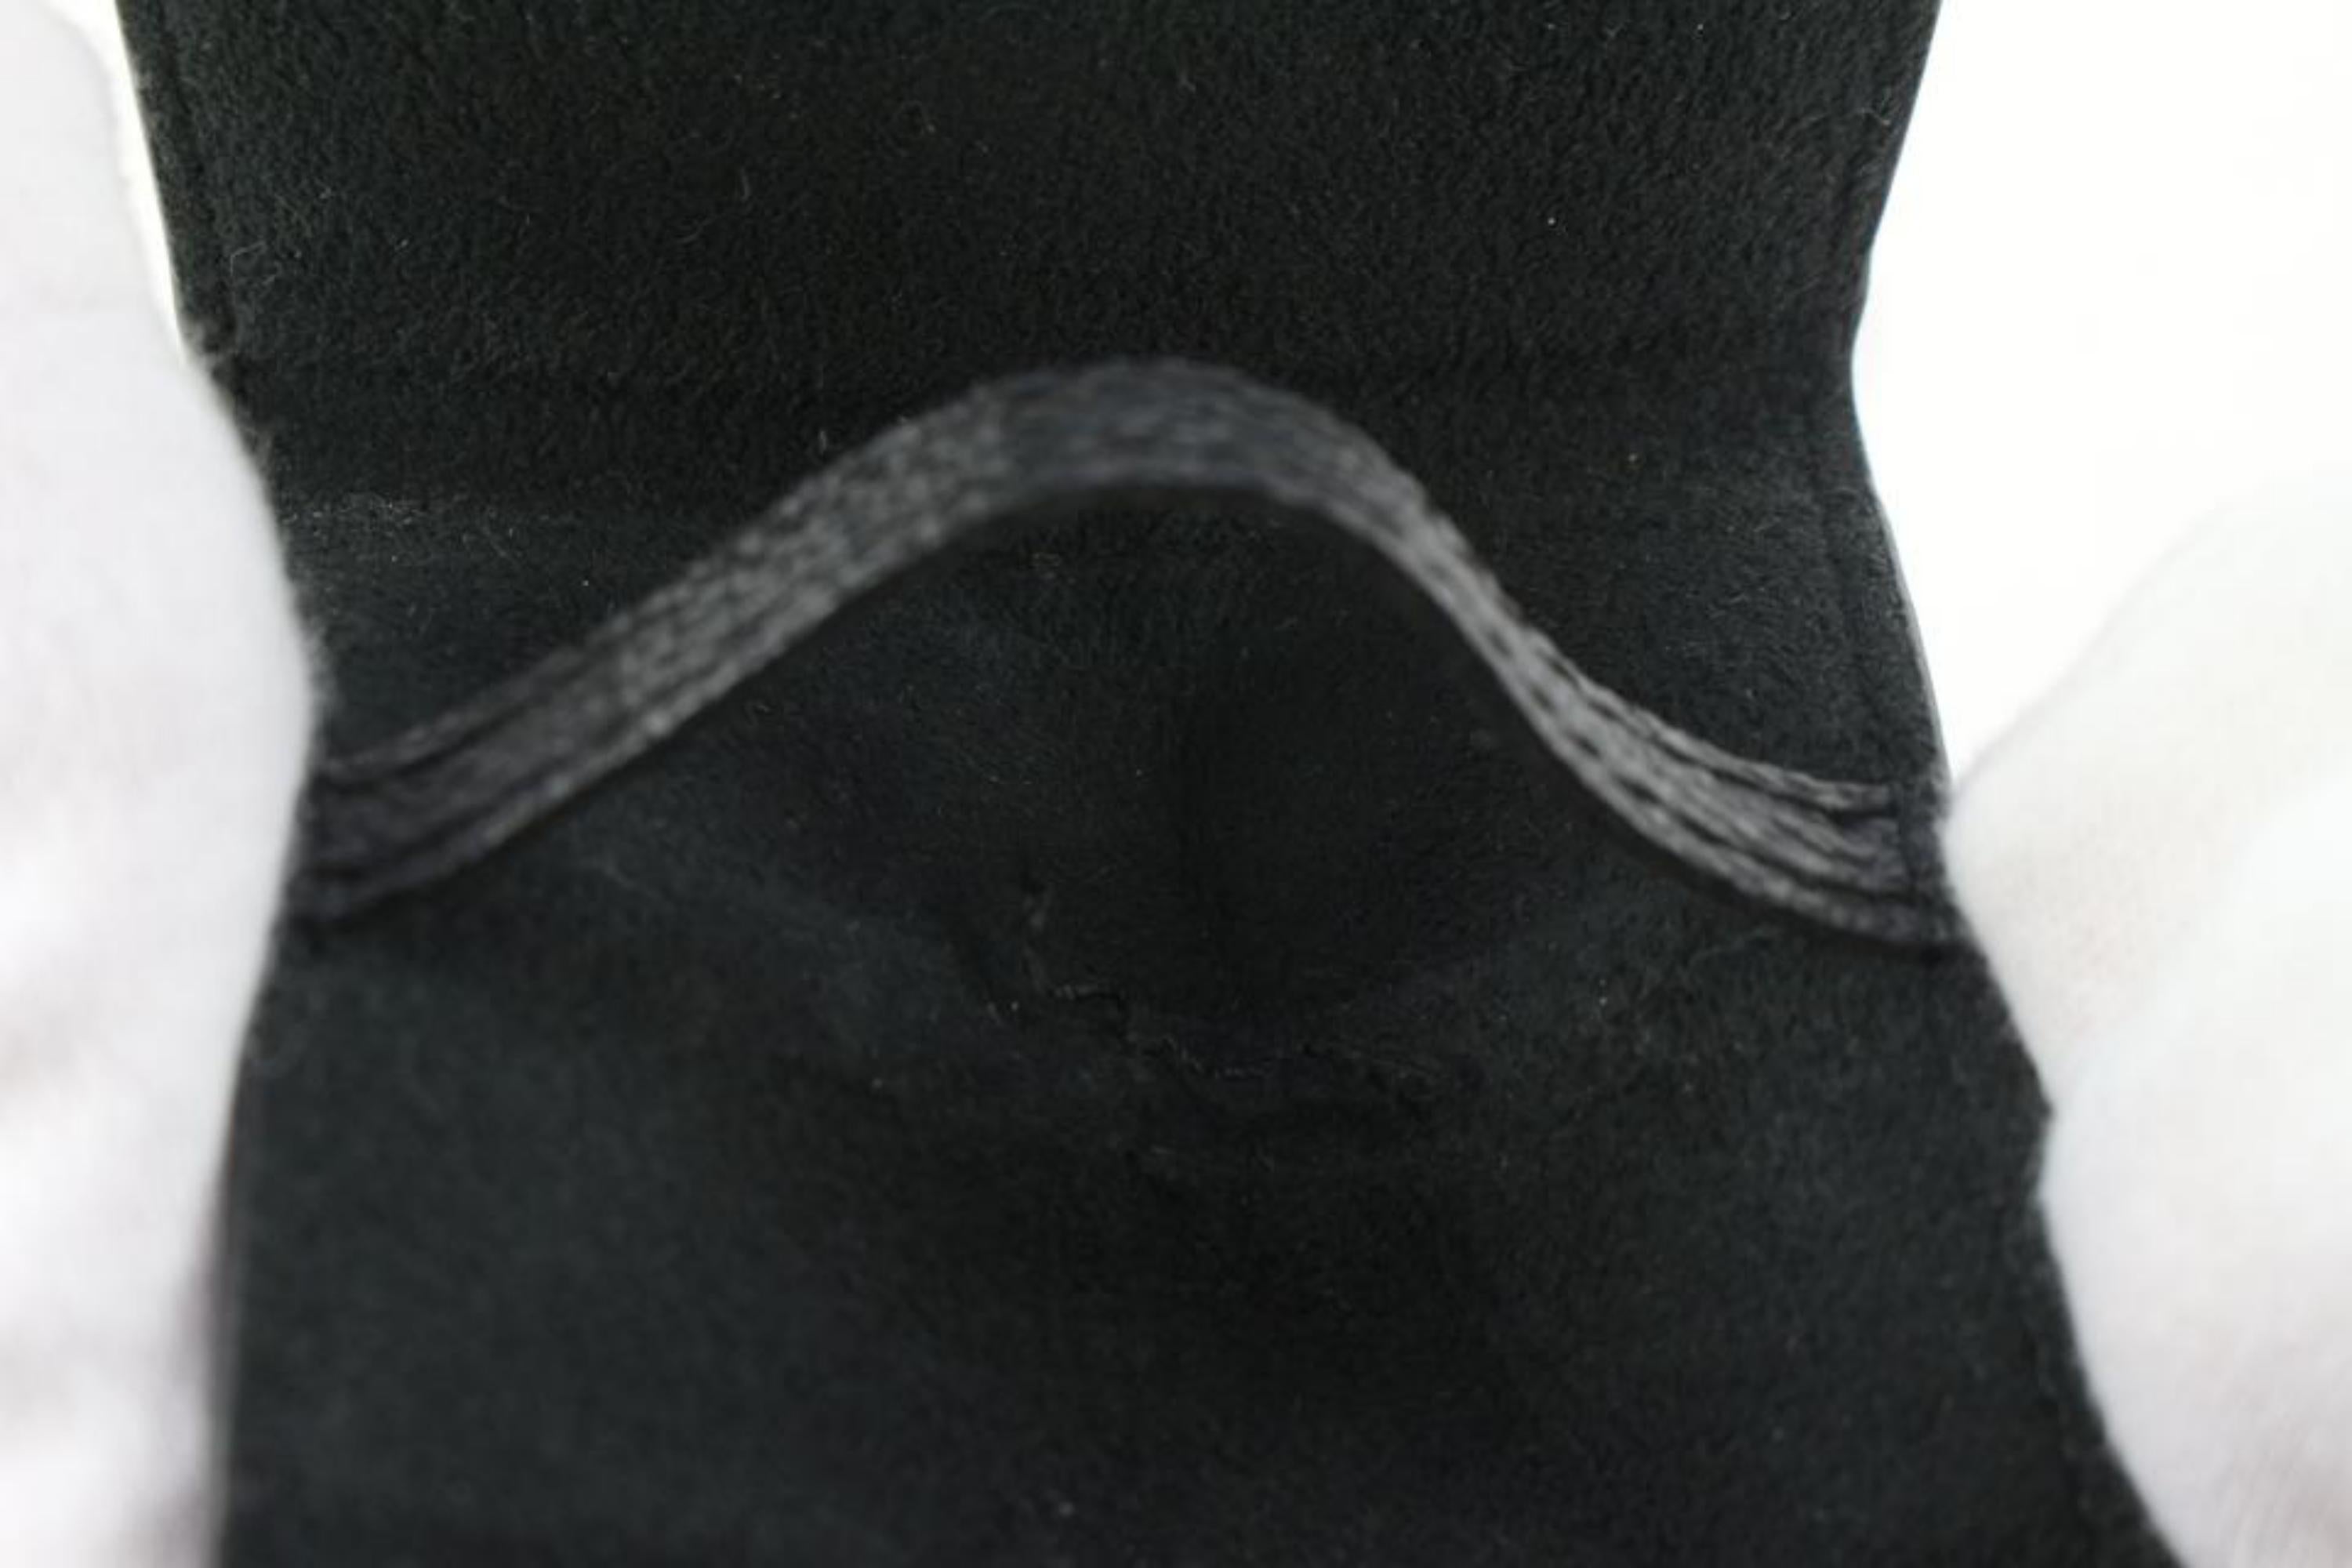 Louis Vuitton Damier Graphite Cufflink Pouch Case Holder 96lk616s